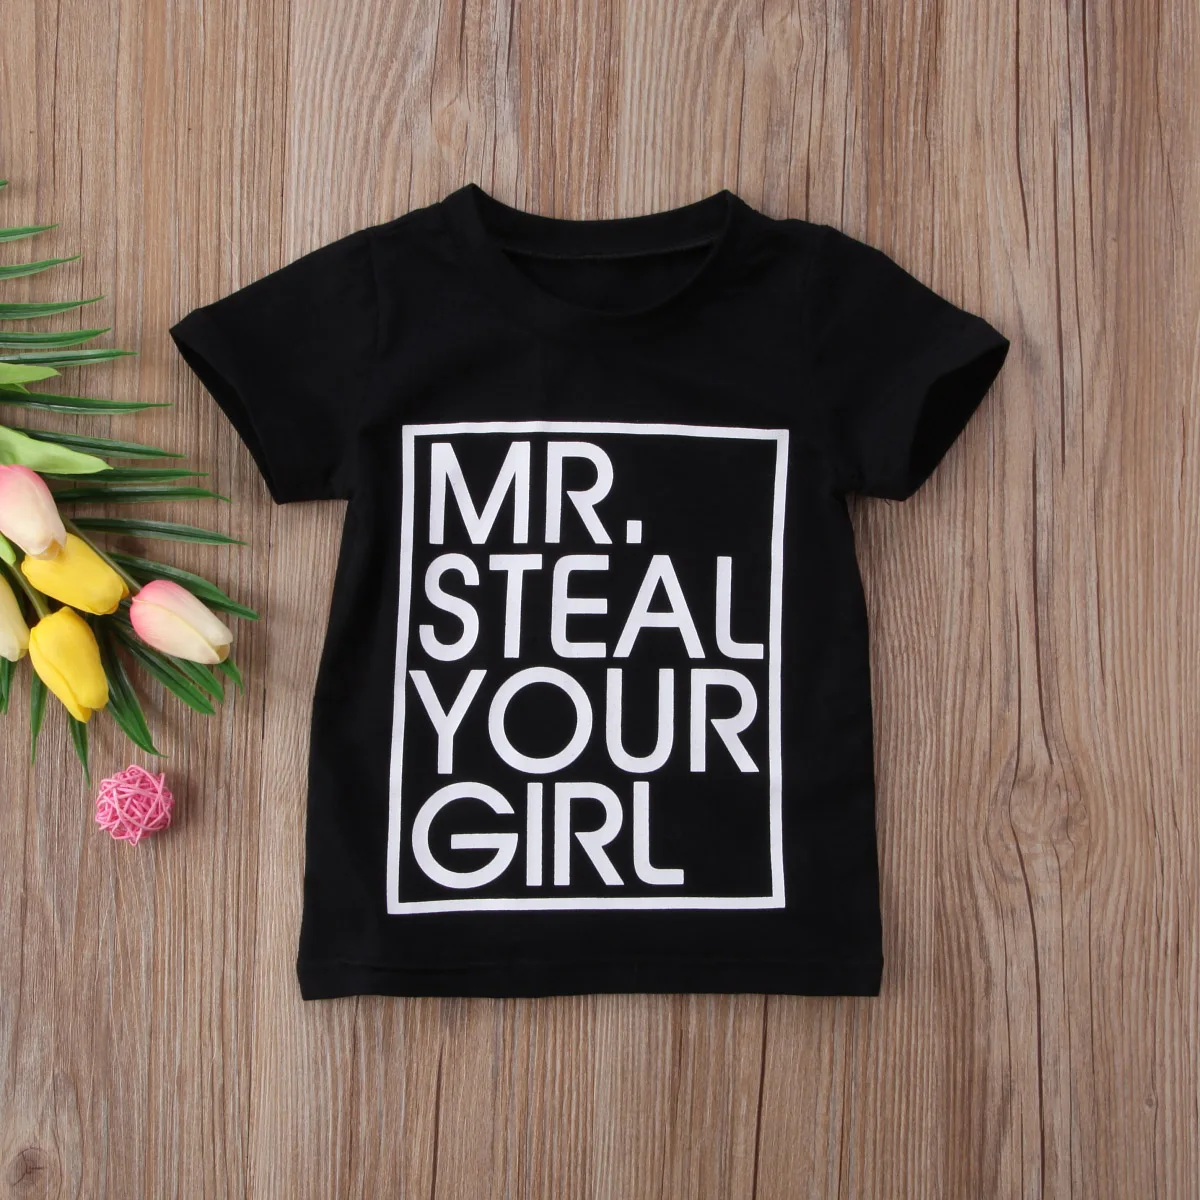 Летняя черная/серая футболка для маленьких мальчиков и девочек с принтом «Mr. Steel» летние майки из хлопка с короткими рукавами - Цвет: Черный